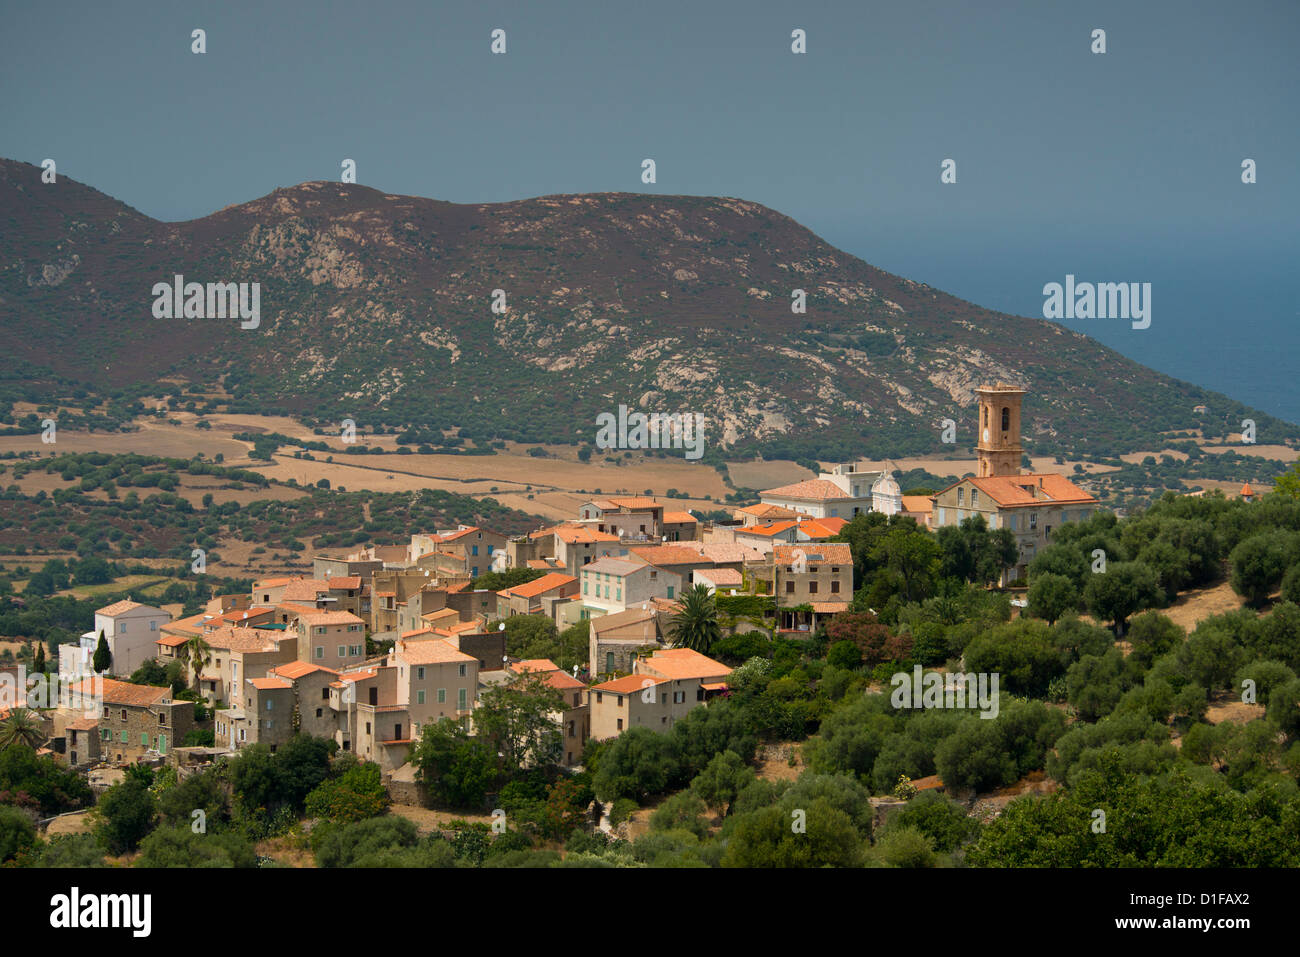 Einen erhöhten Blick auf das malerische Dorf Aregno in der Binnenschifffahrt Haute Balagne Region, Korsika, Frankreich, Mittelmeer, Europa Stockfoto